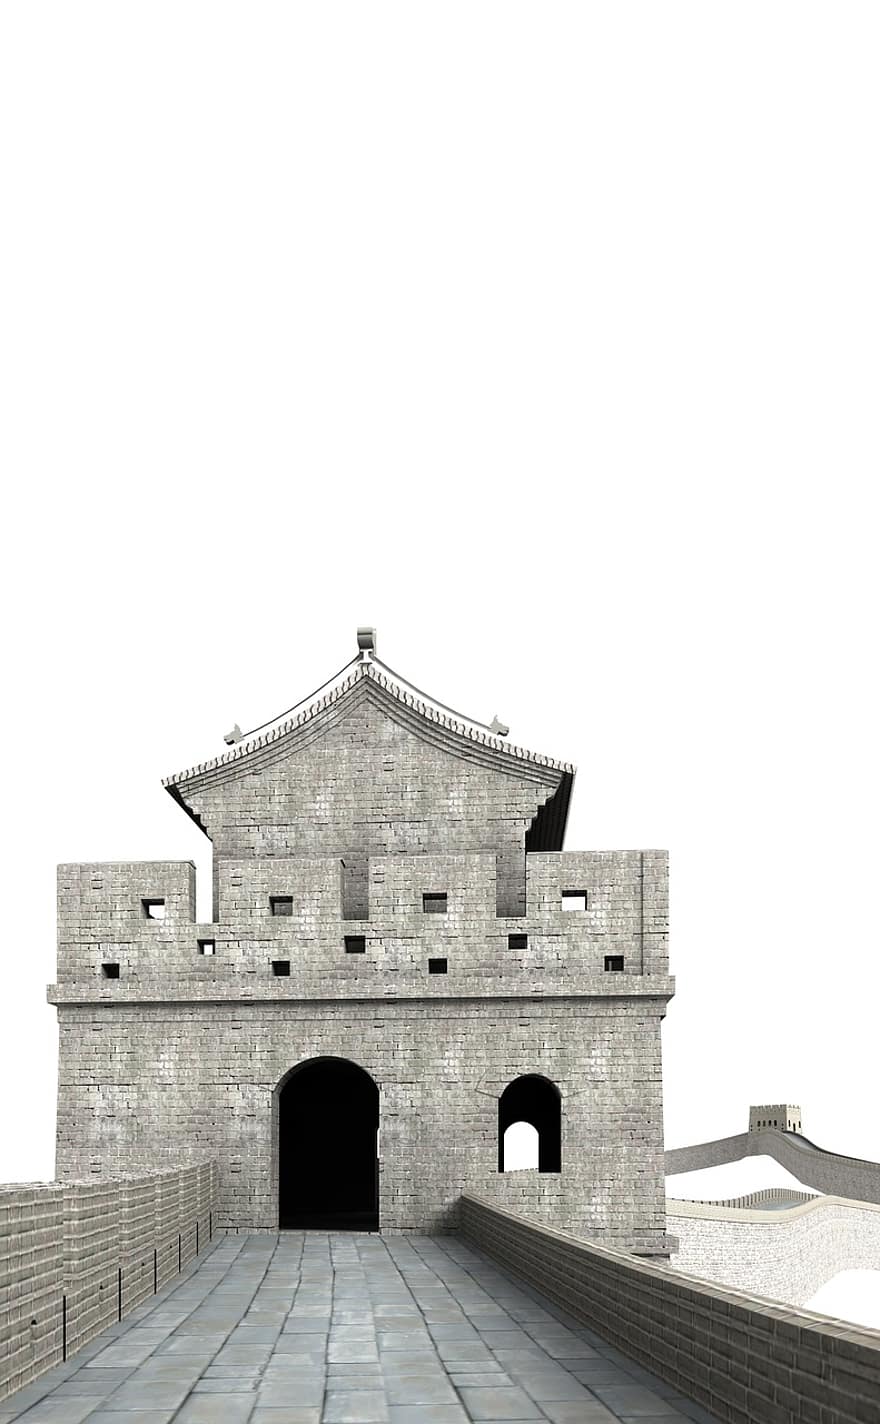 большой, стена, Китай, строительство, церковь, достопримечательности, исторически, туристы, Привлечение, ориентир, фасад